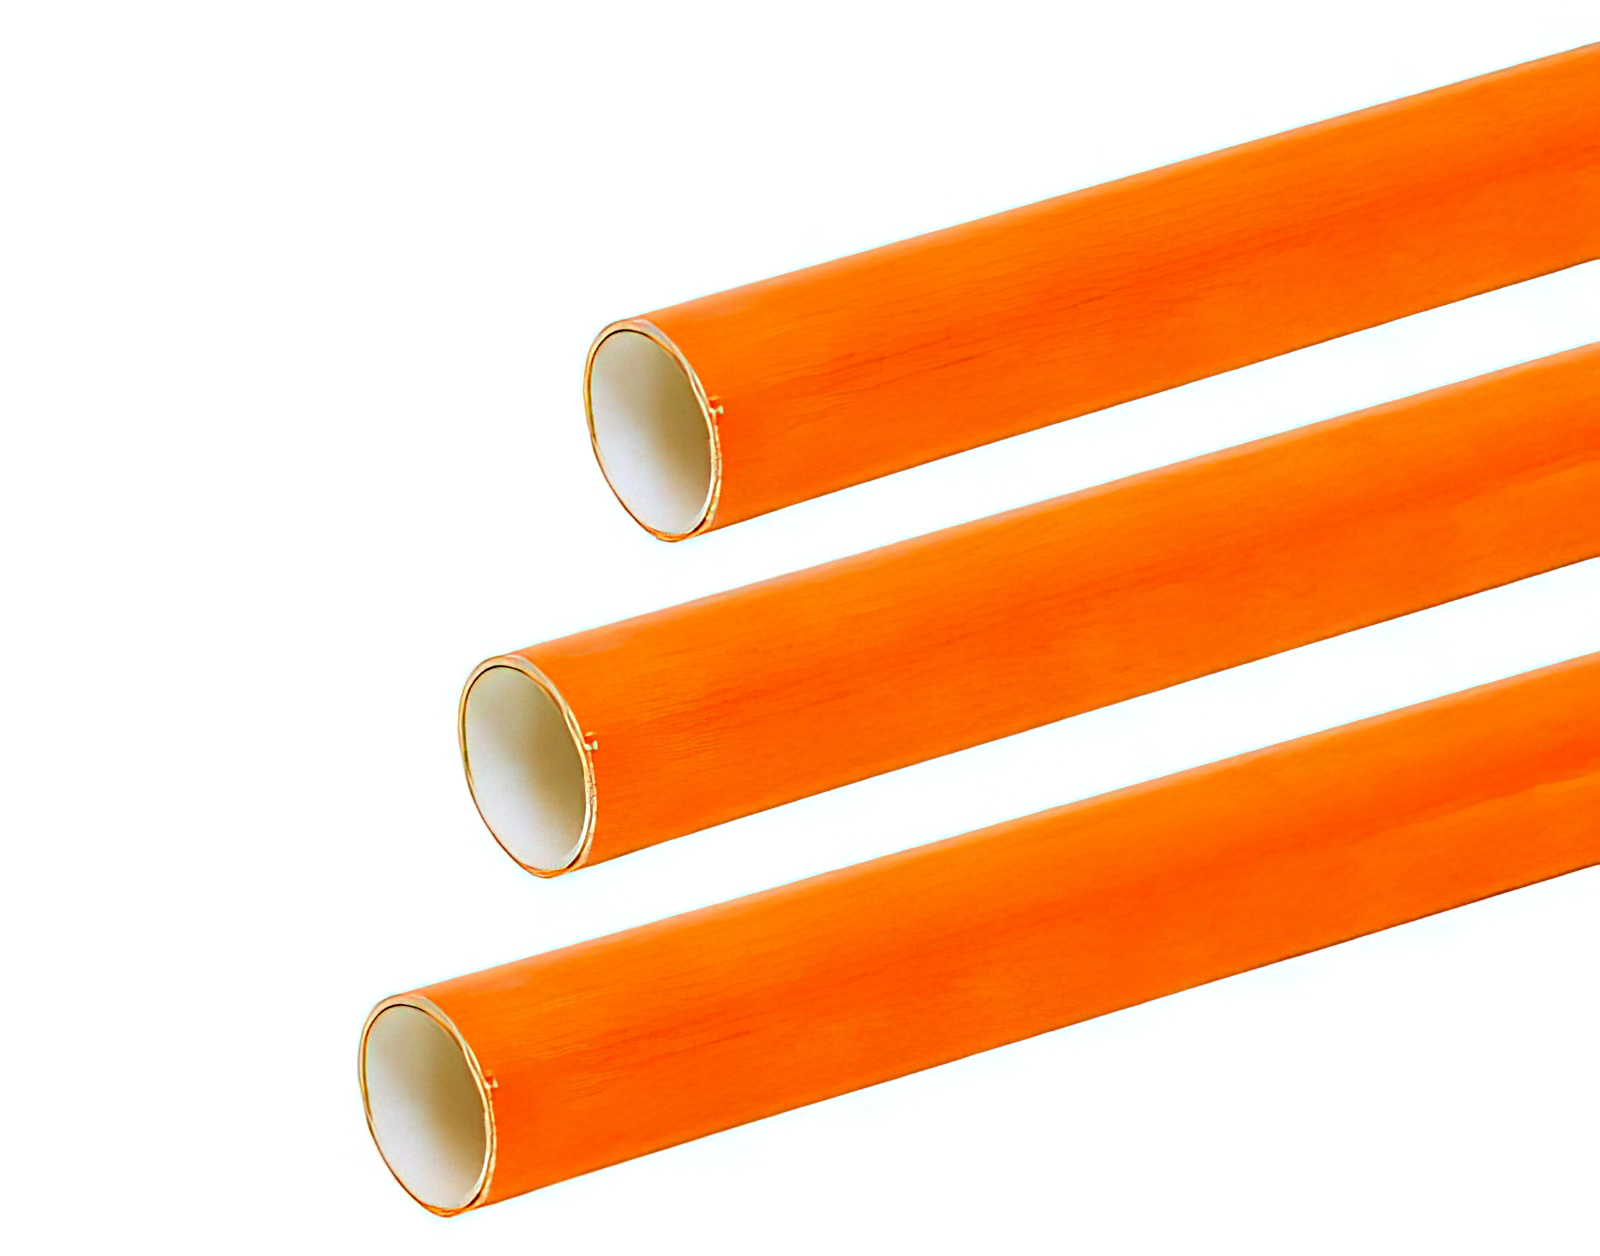 5 Stück - Gfk-Rohr (Fiberglasstab/Glasfaserstab) 22 mm x 19 mm 150 cm orange für Drachen- und Modellbau Basteln Montagen Messebau Industrie Haushalt